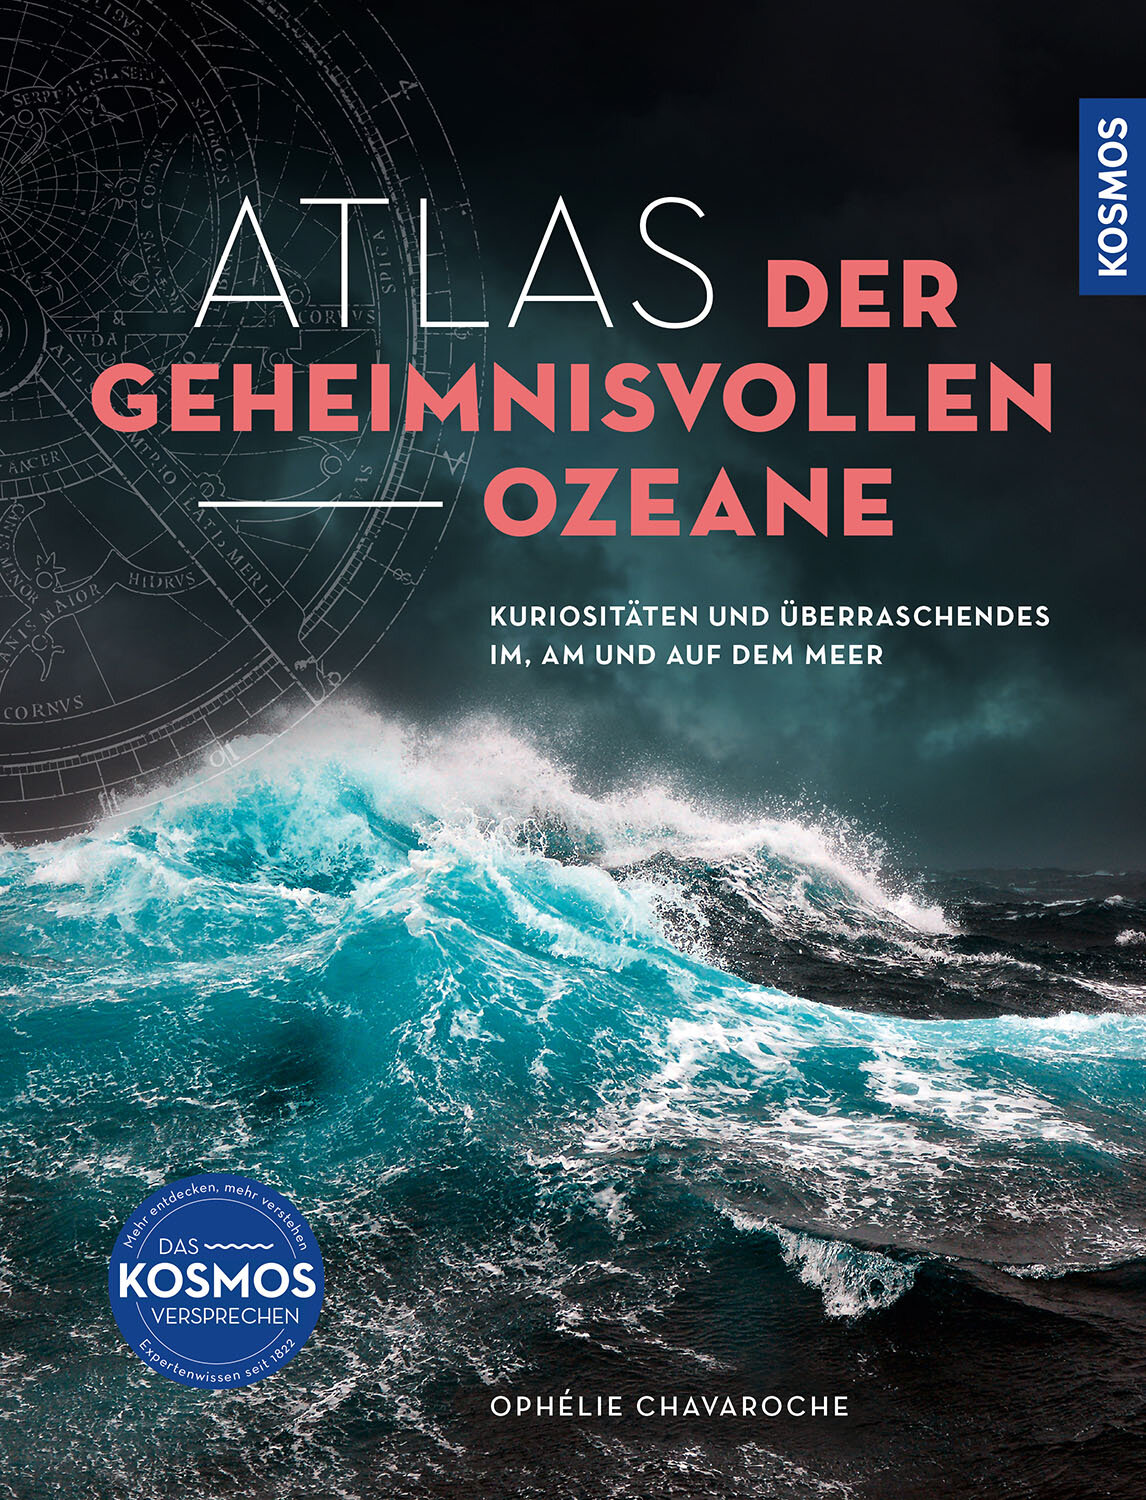 Atlas der geheimnisvollen Ozeane